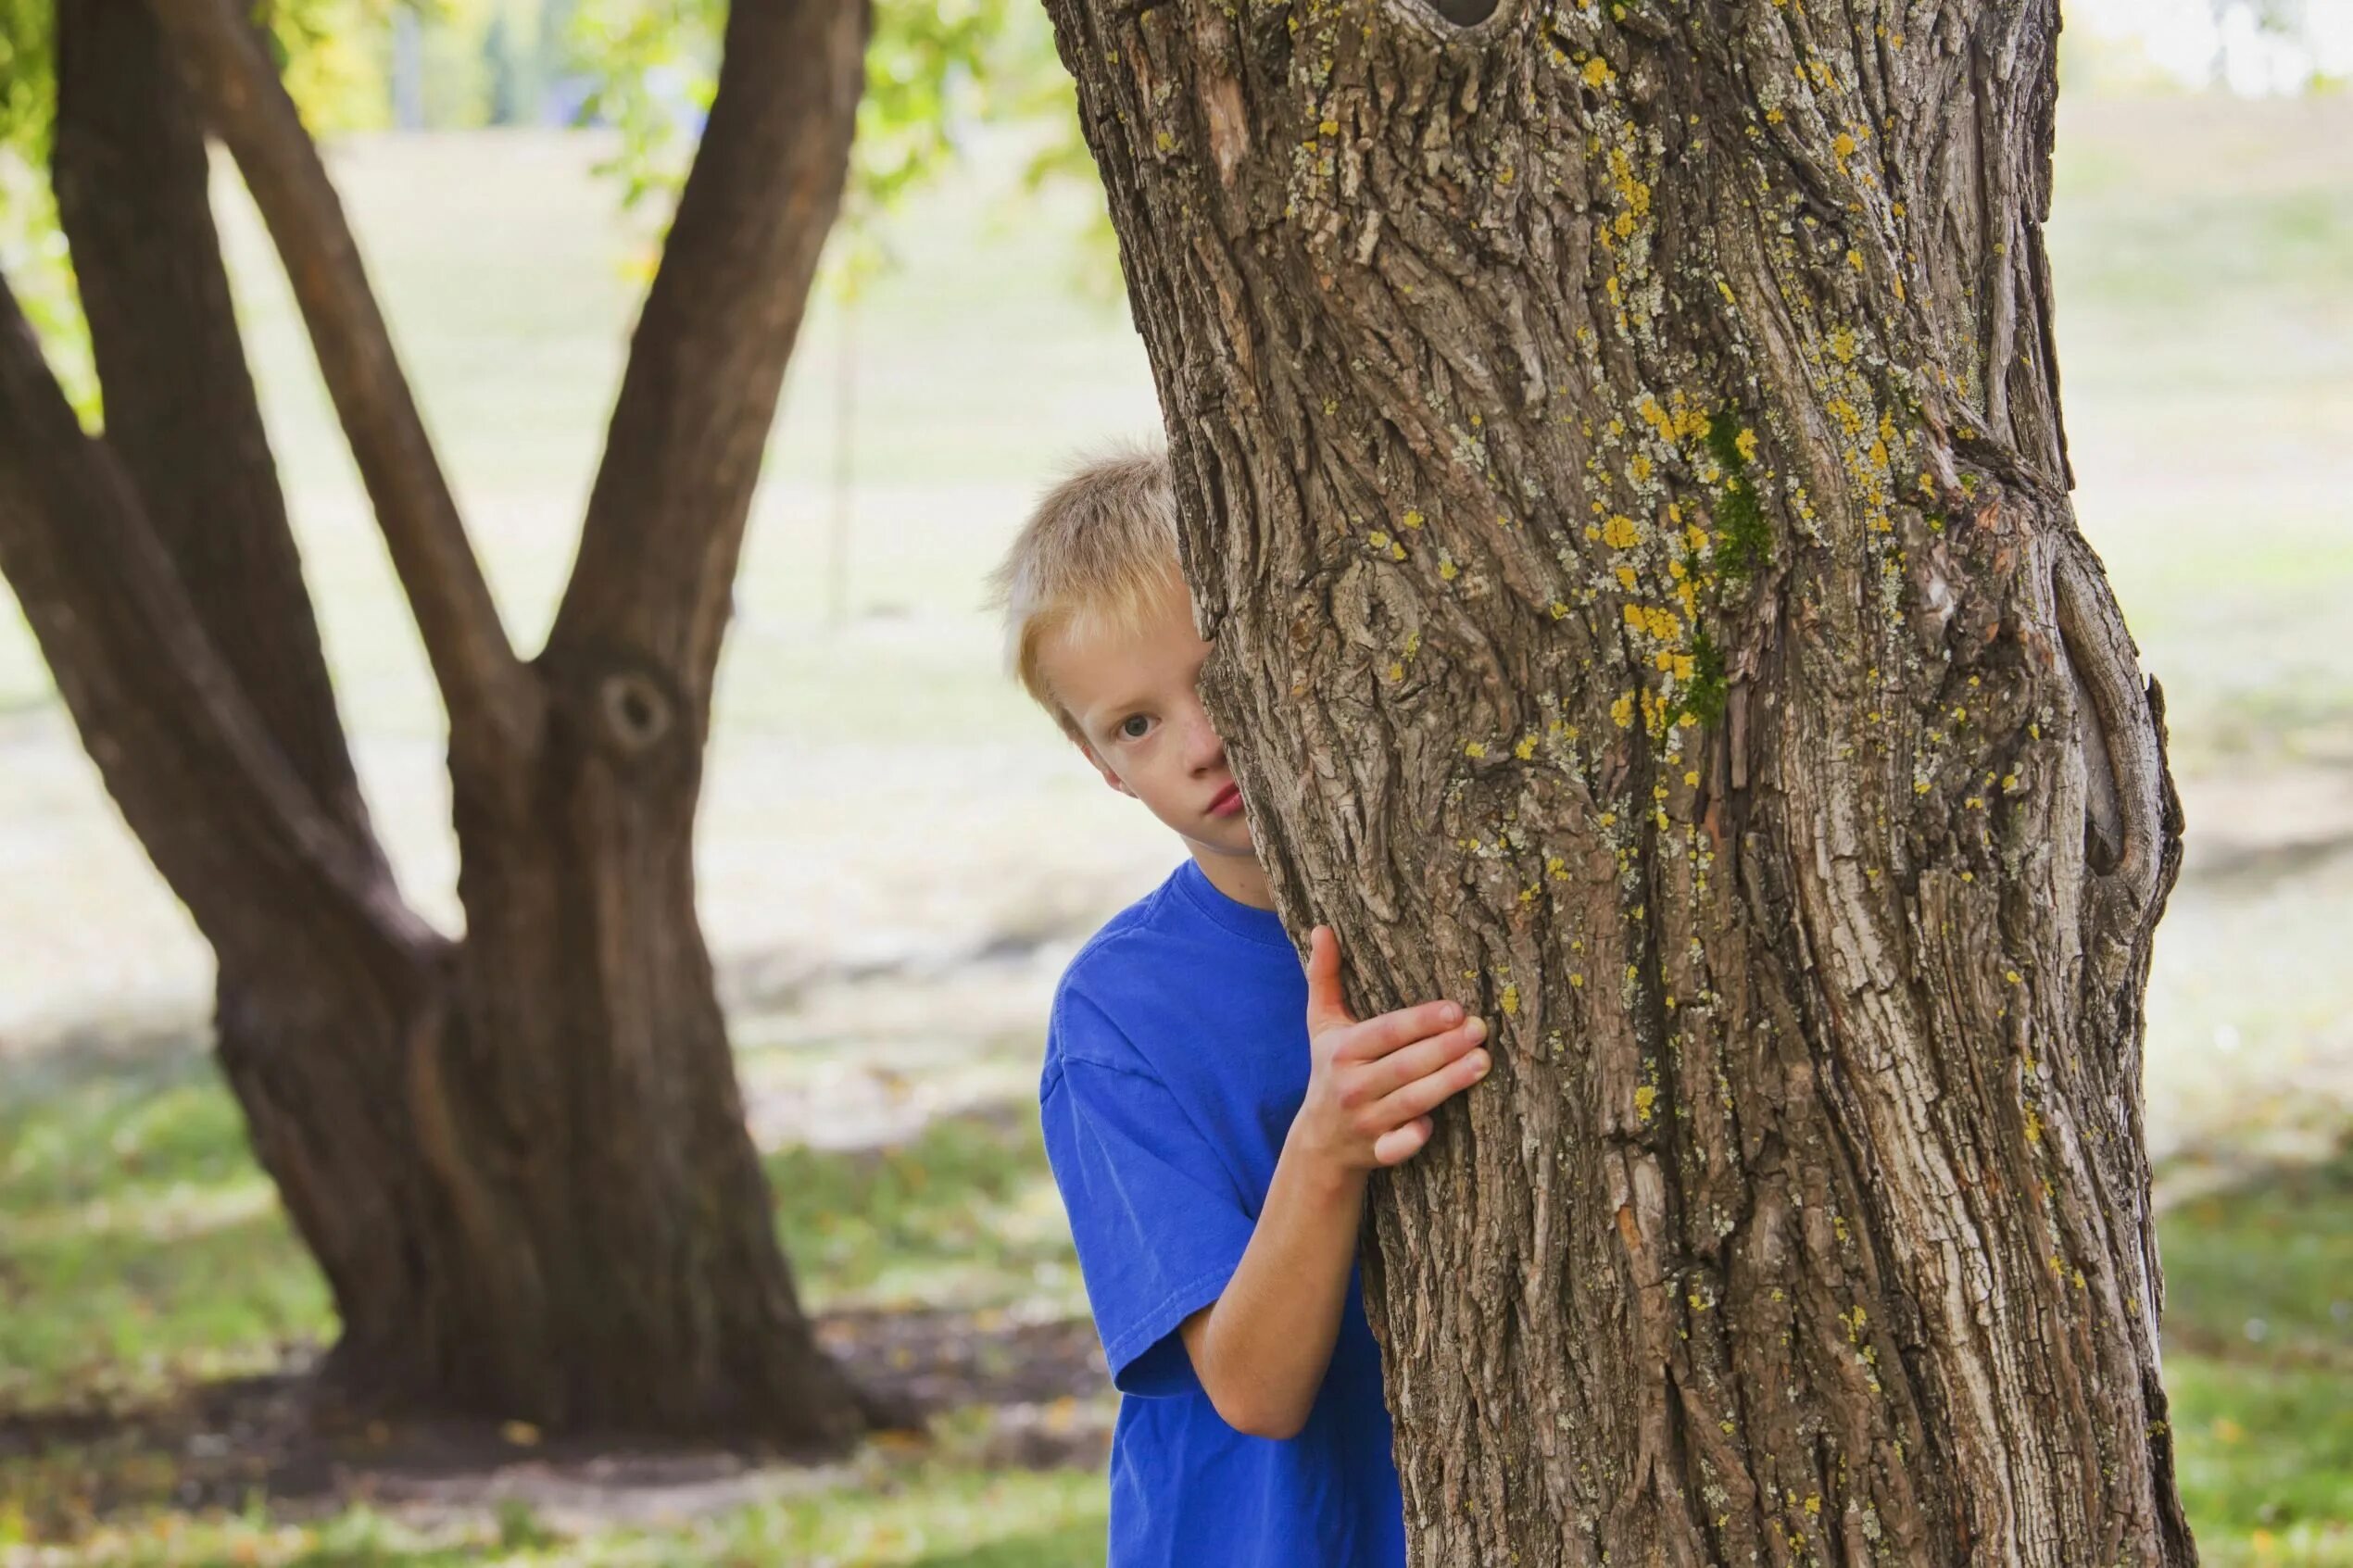 Прятки 1 выпуск. Человек спрятался за деревом. Прячется у дерева. Мальчик спрятался за дерево. Спрятался за деревом.